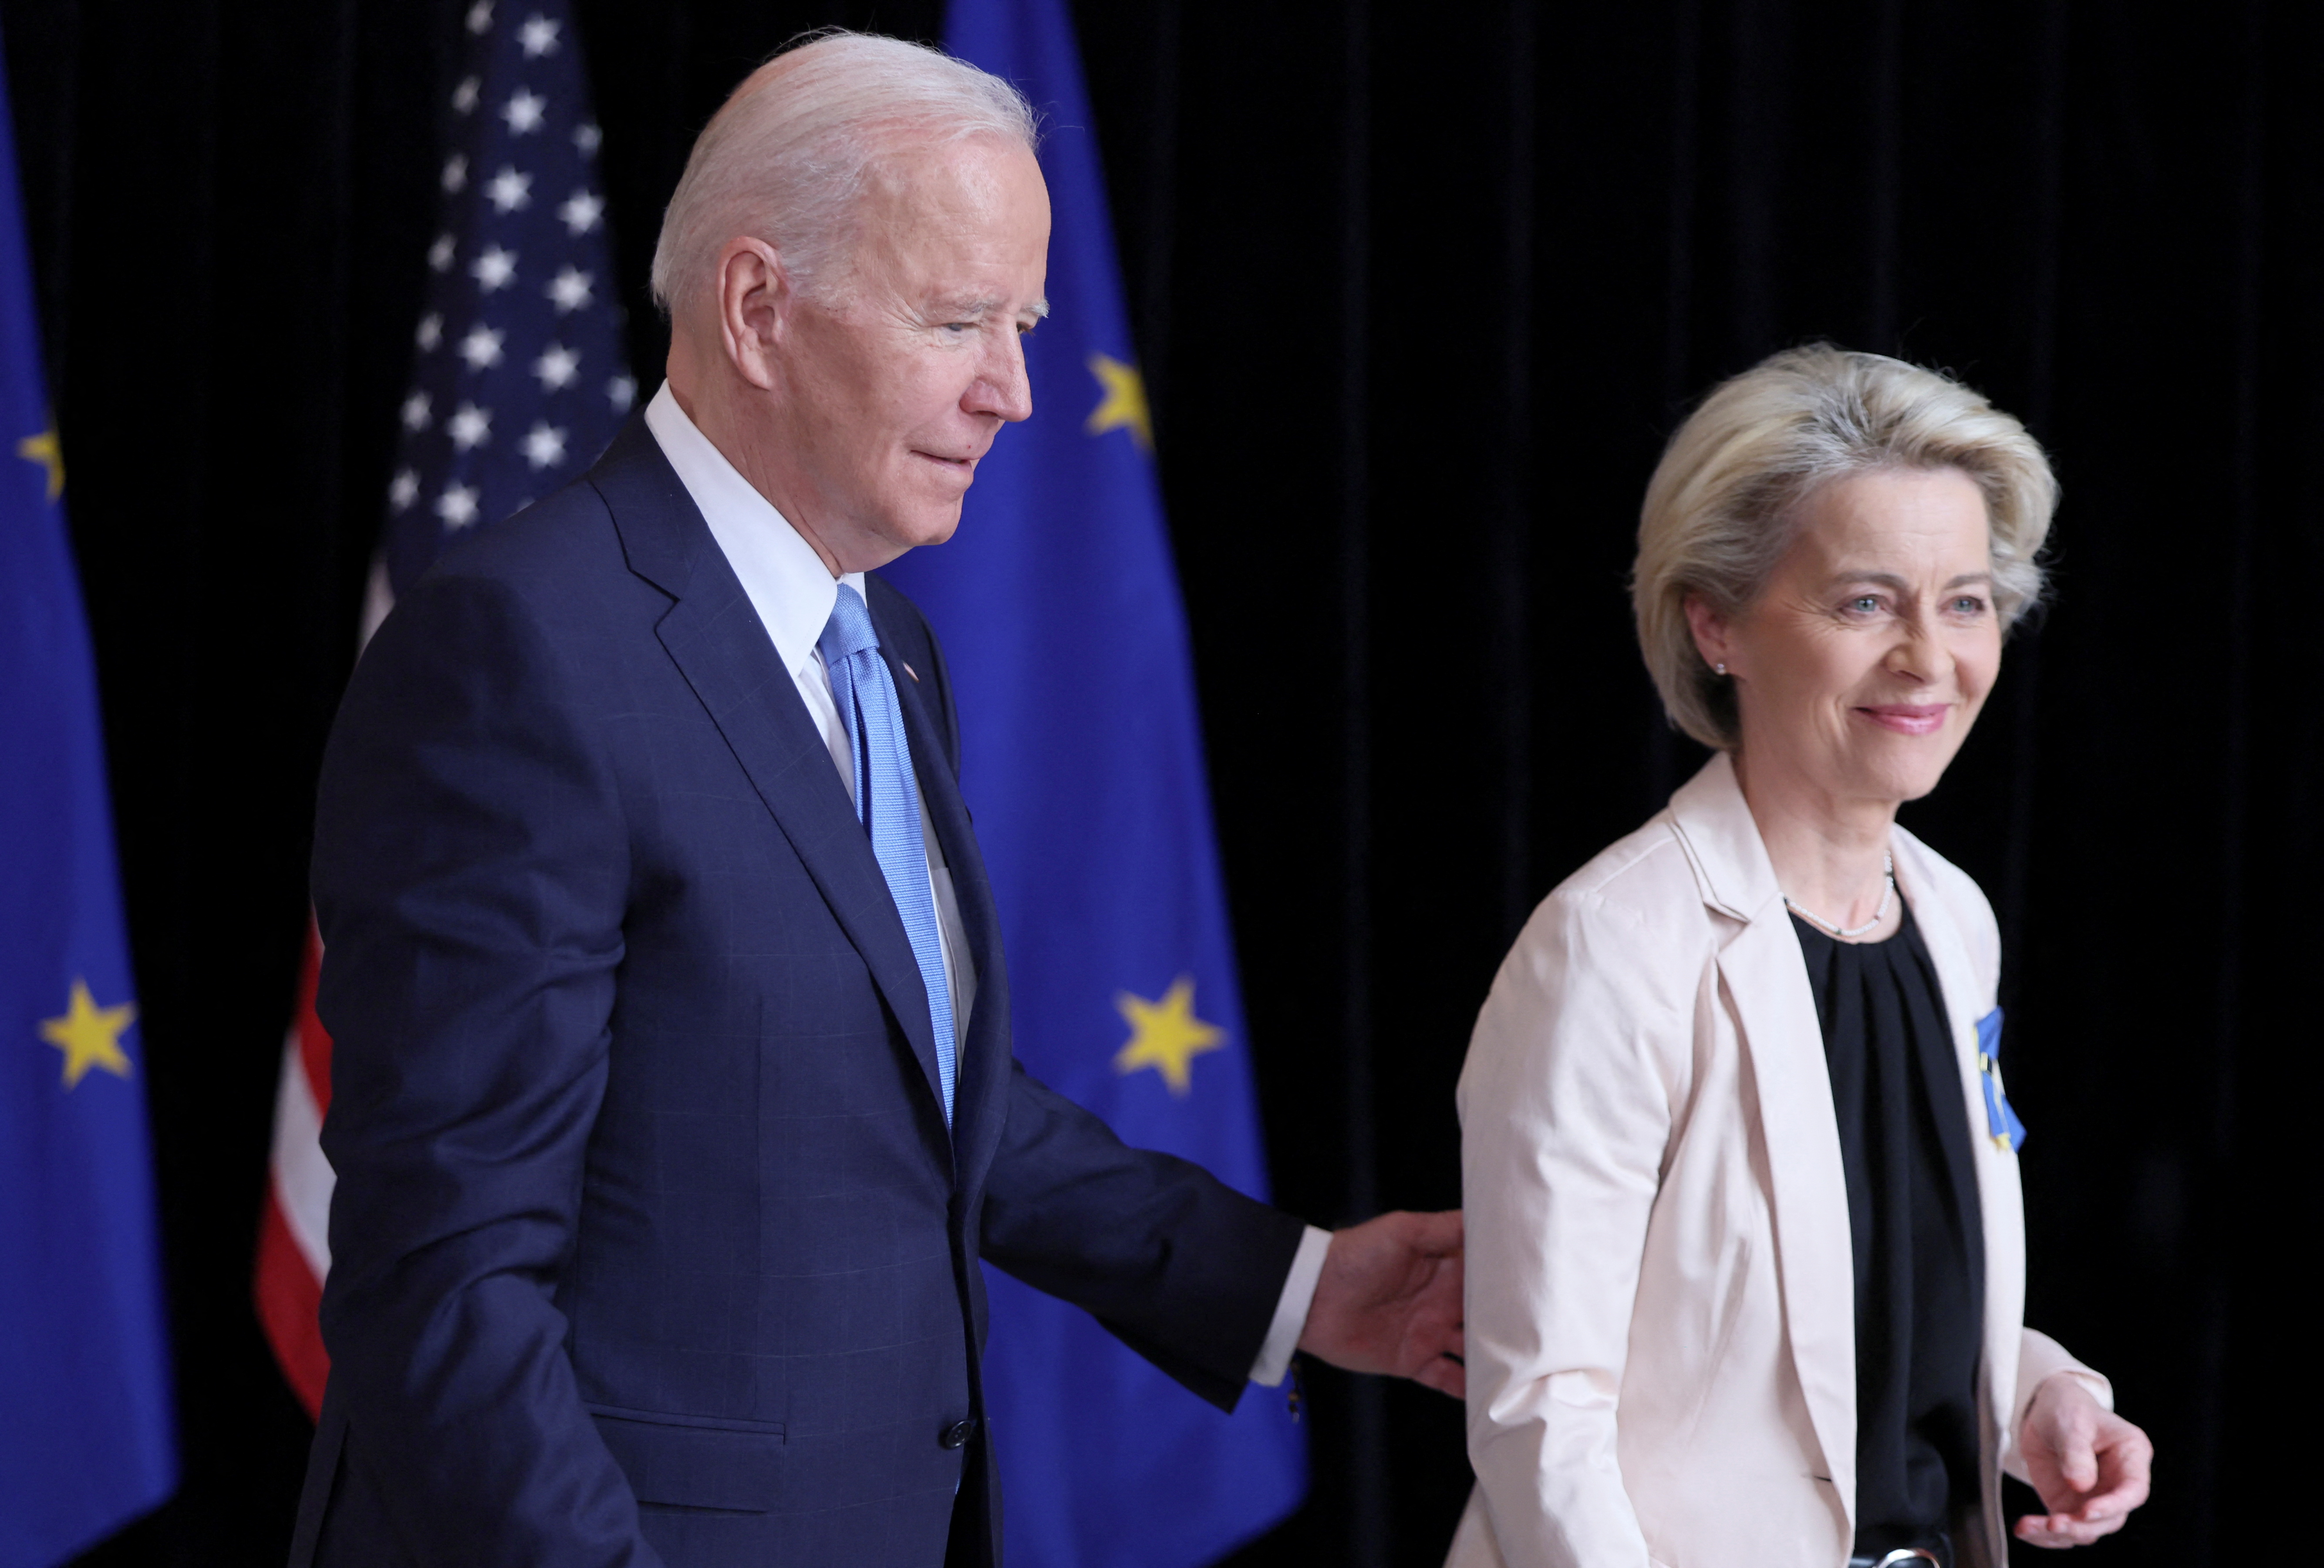 El presidente de Estados Unidos, Joe Biden, y la presidenta de la Comisión Europea, Ursula von der Leyen, en una declaración de prensa conjunta en la Misión de Estados Unidos en Bruselas, Bélgica, el 25 de marzo de 2022. REUTERS/Evelyn Hockstein